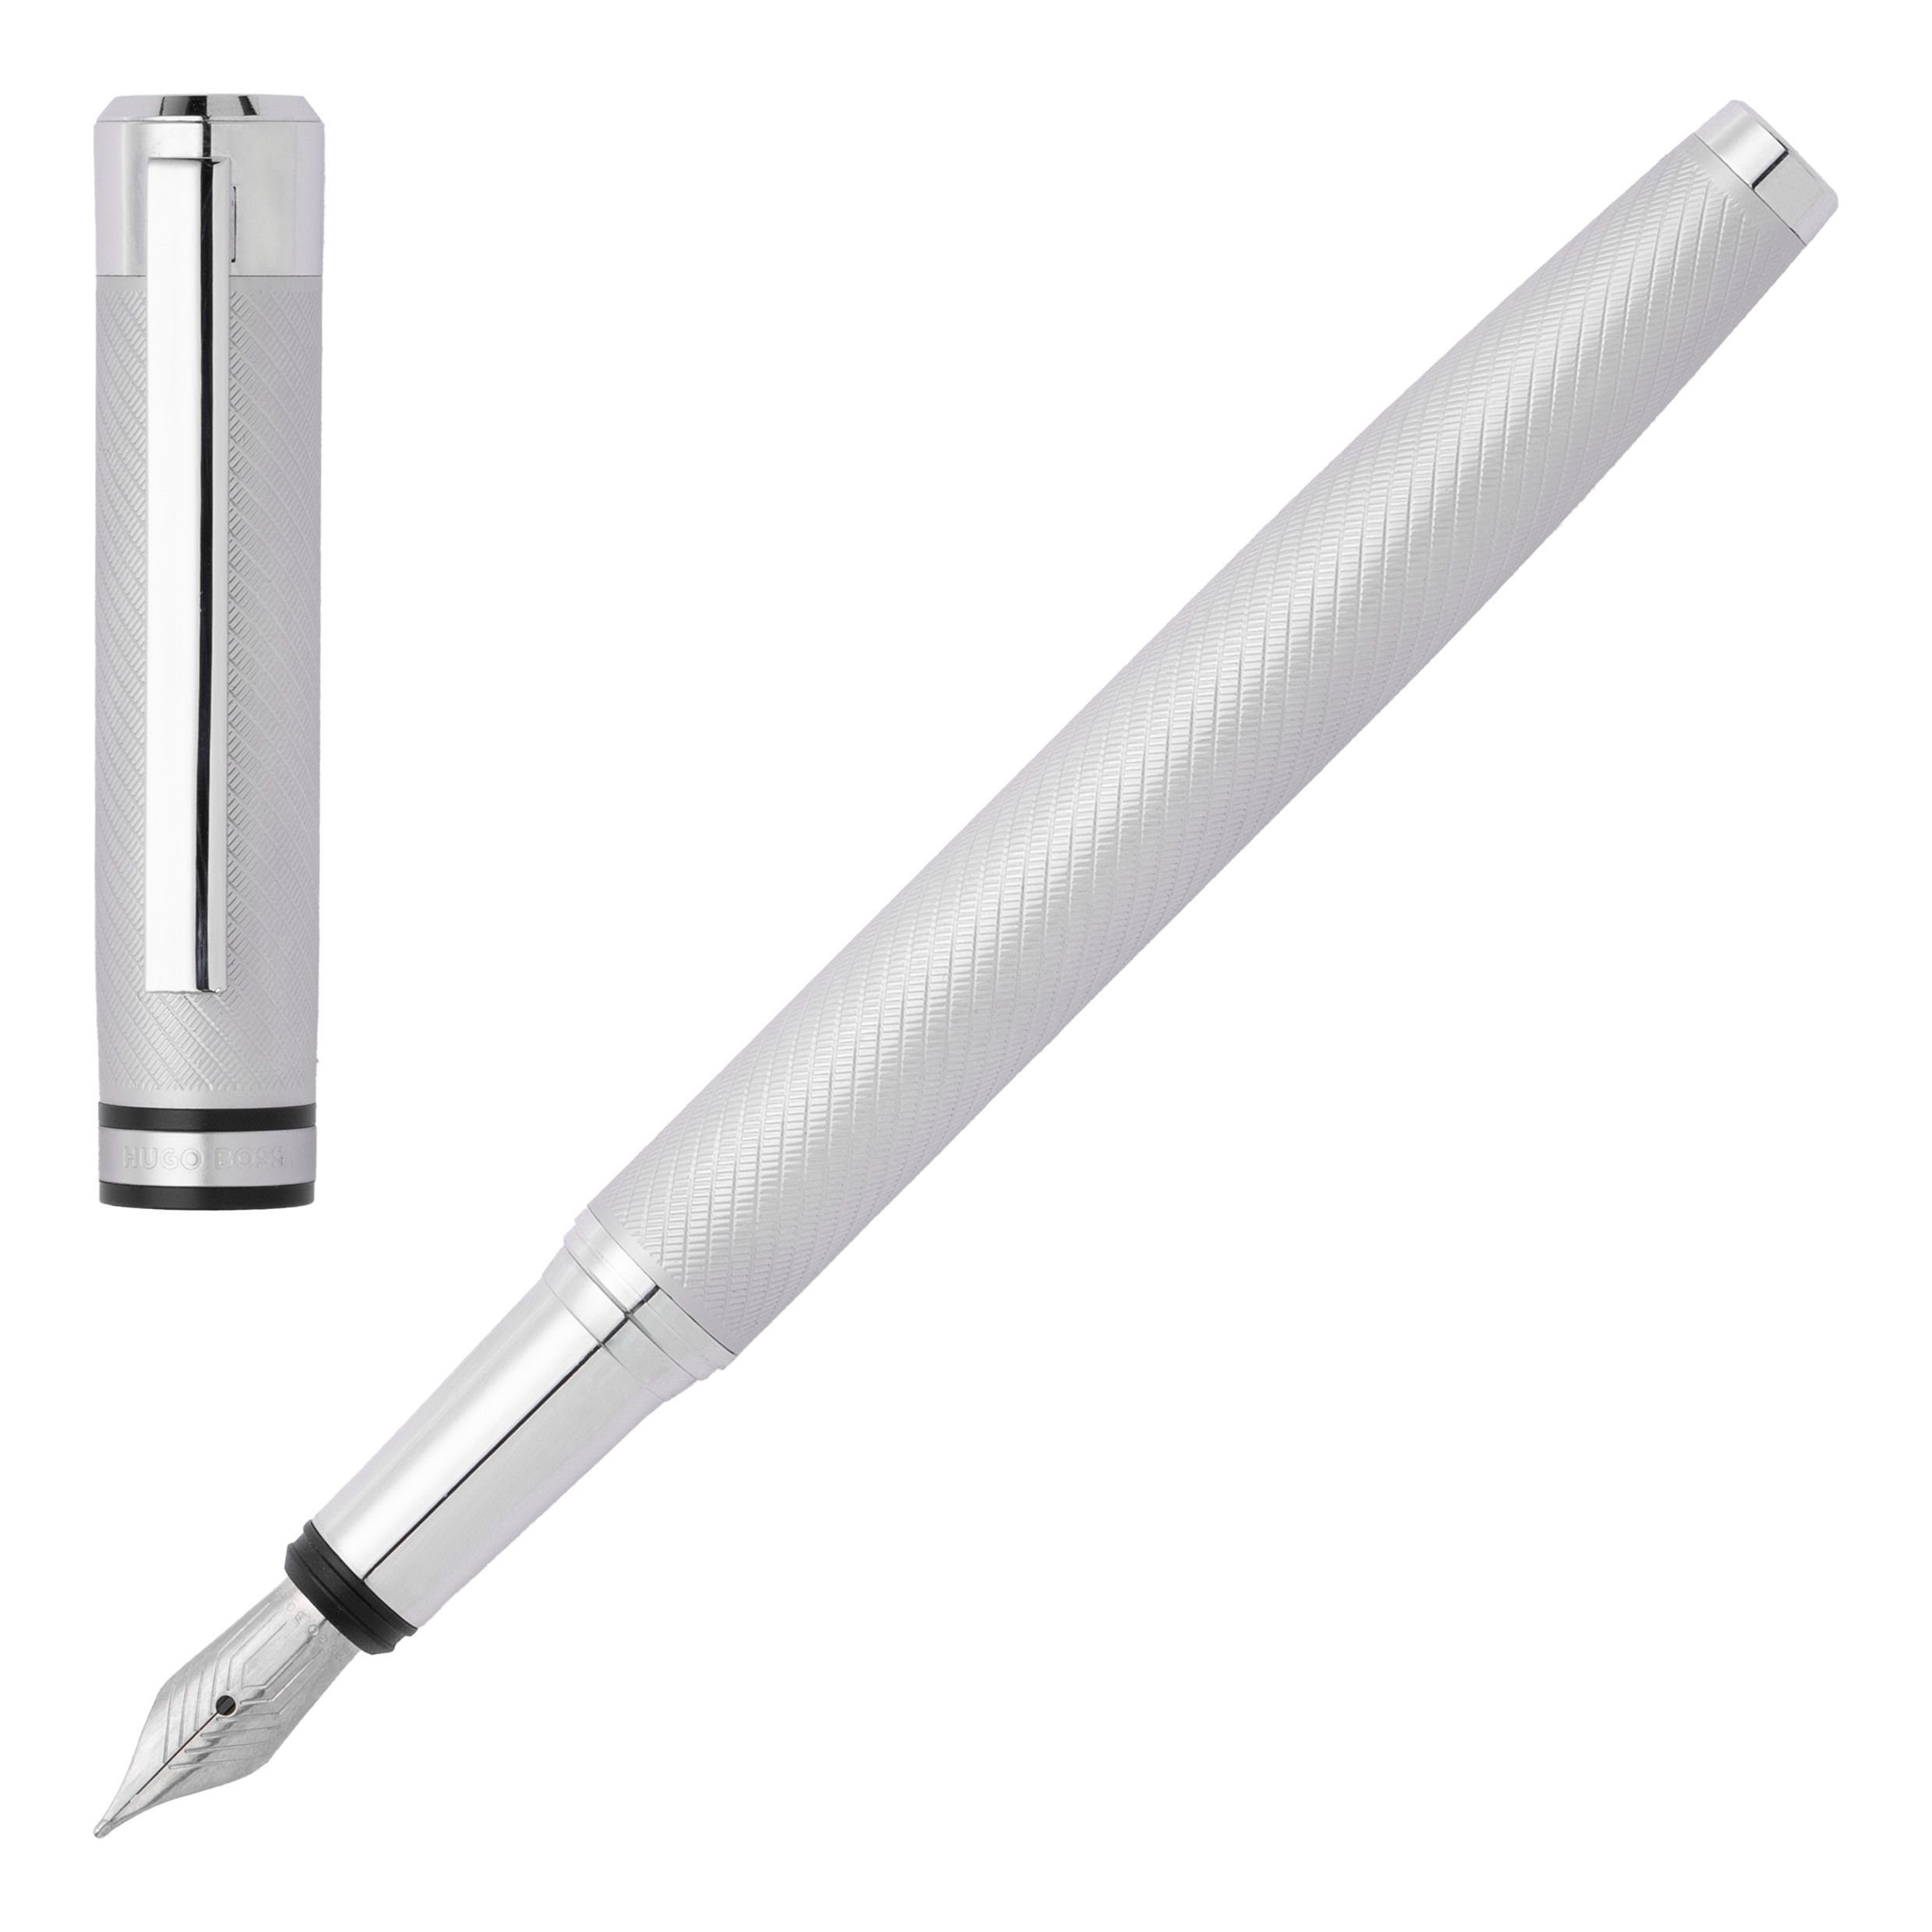 BOSS Füllfederhalter Hugo Boss Filament Pen Silber Set) (kein Fountain Chrome Füllfederhalter Metall